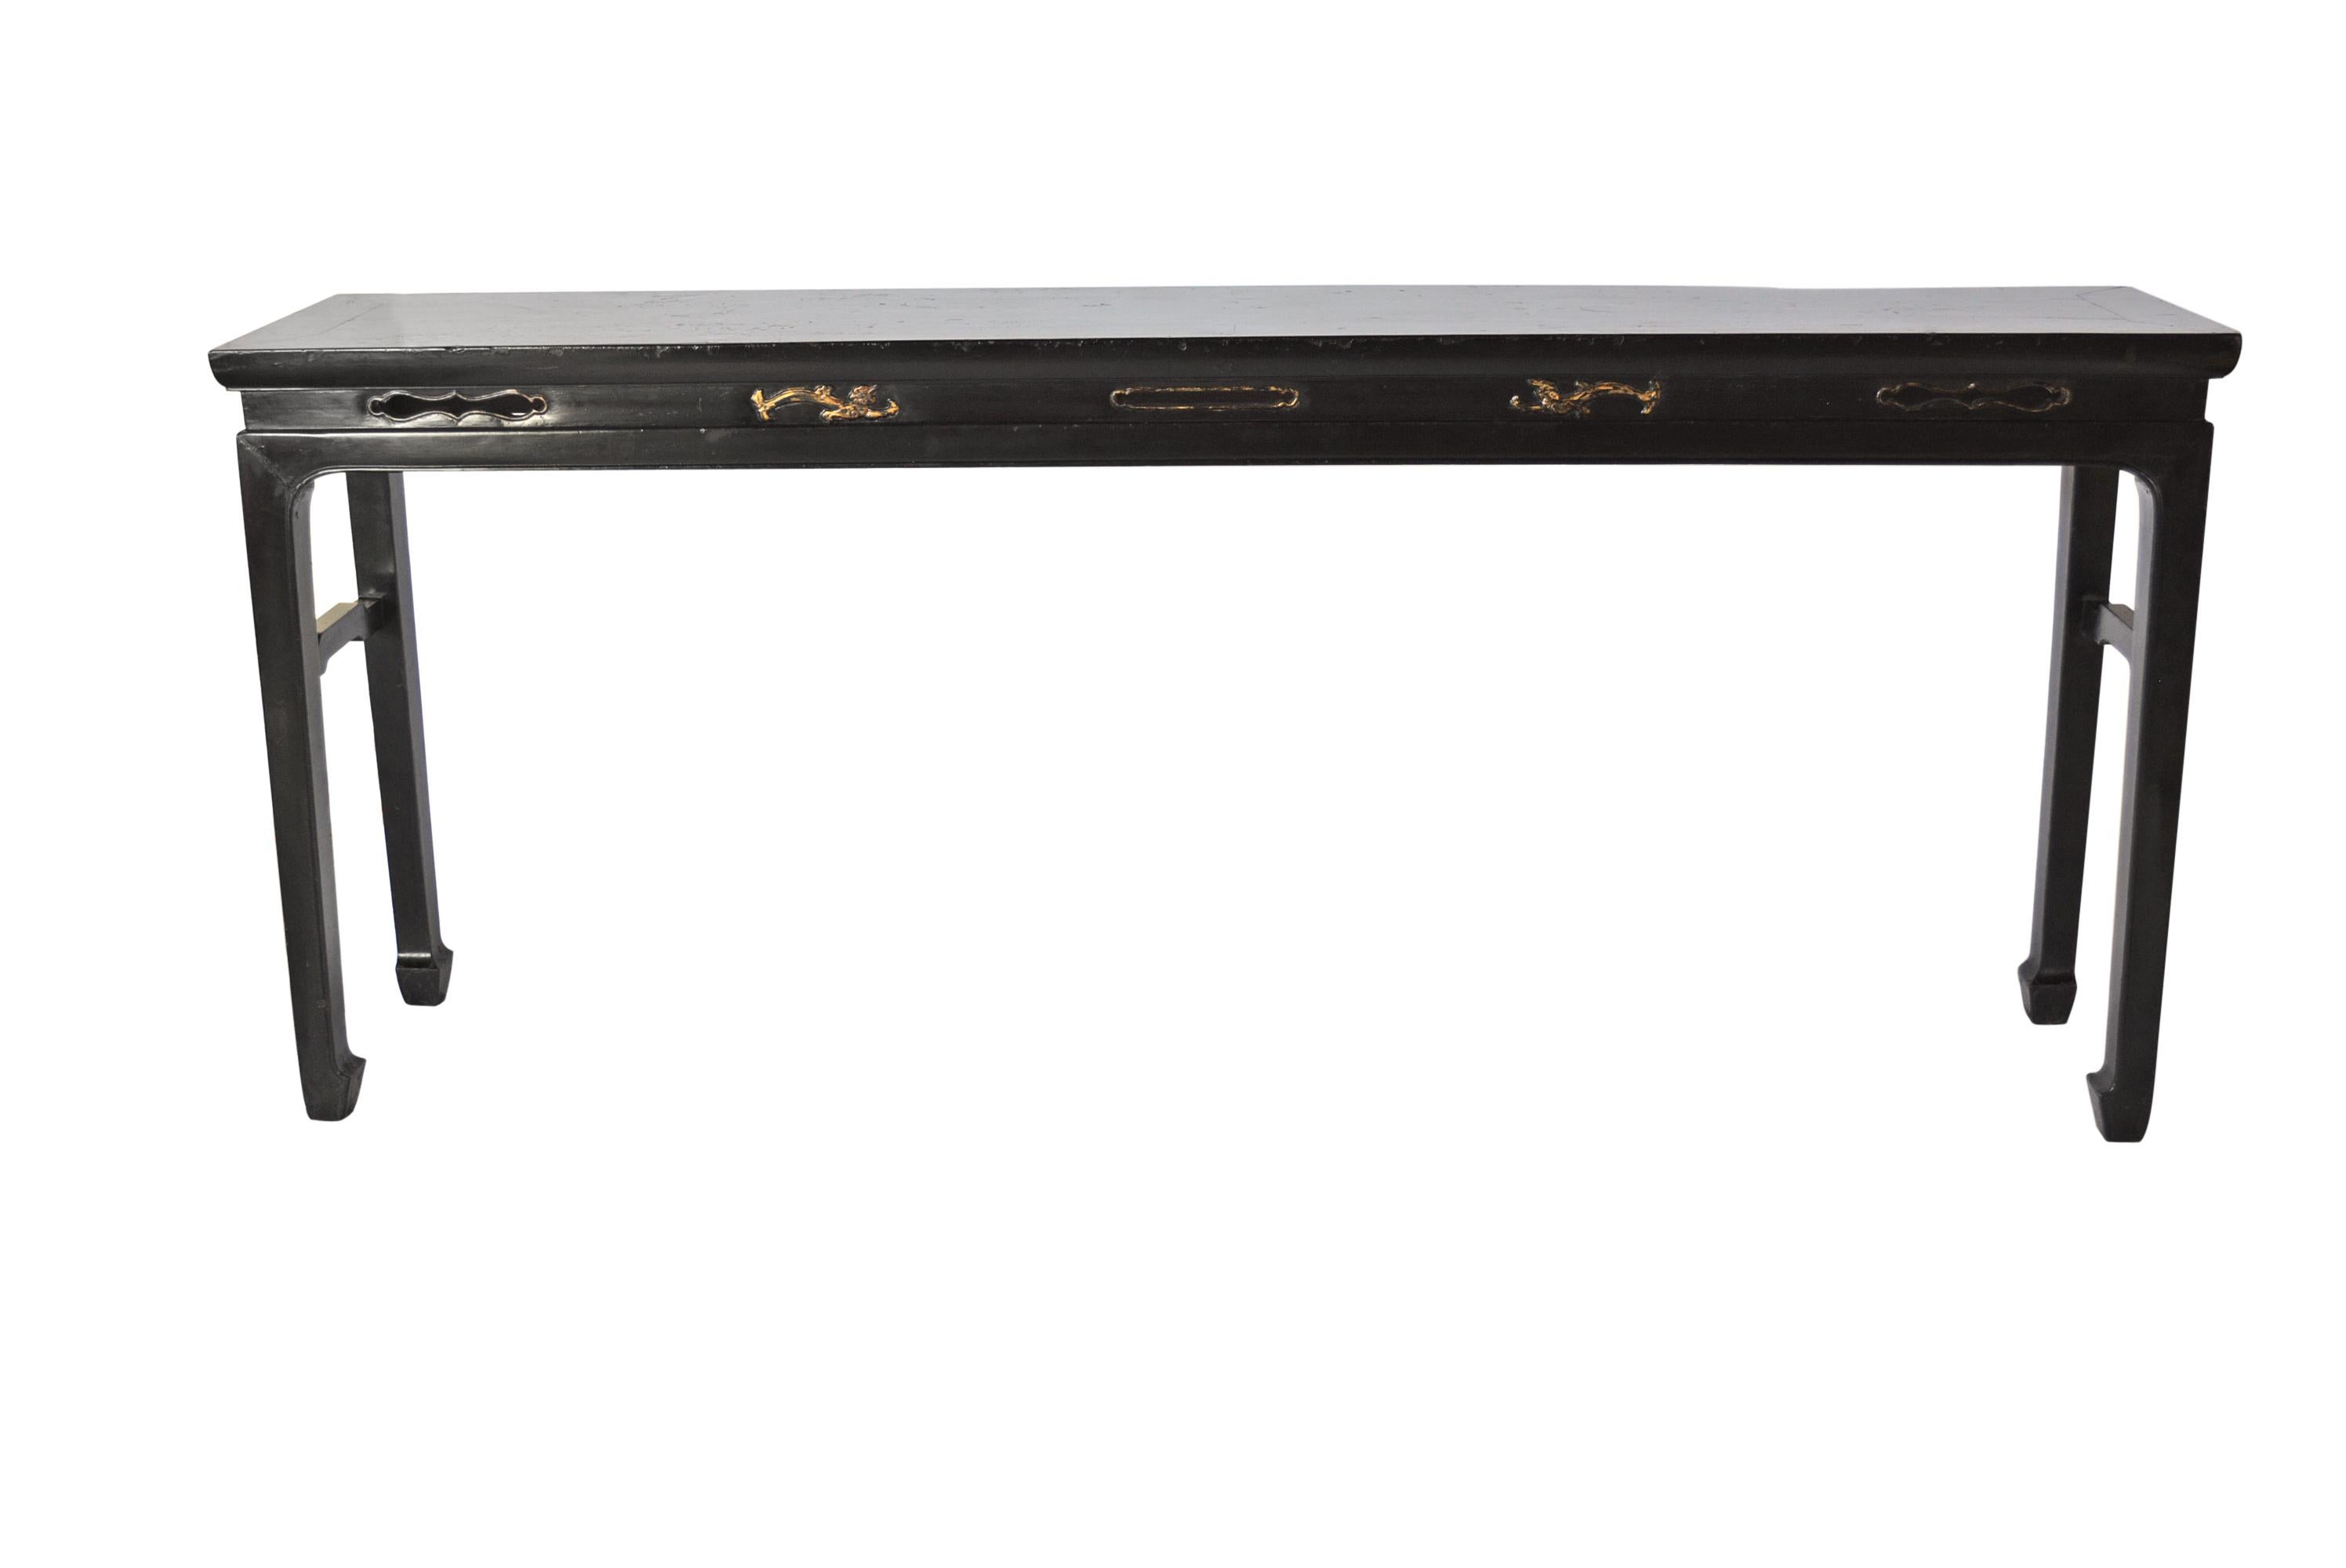 Dieser elegante, lange Tisch aus schwarzem Lack ist in der Taille mit einer länglichen Begonie verziert, die im offenen Stil geschnitzt ist. Die Platte ist ein massives Stück Holz. Die Beine sind gerade mit großem Pferdehuf. Zwischen den Beinen wird